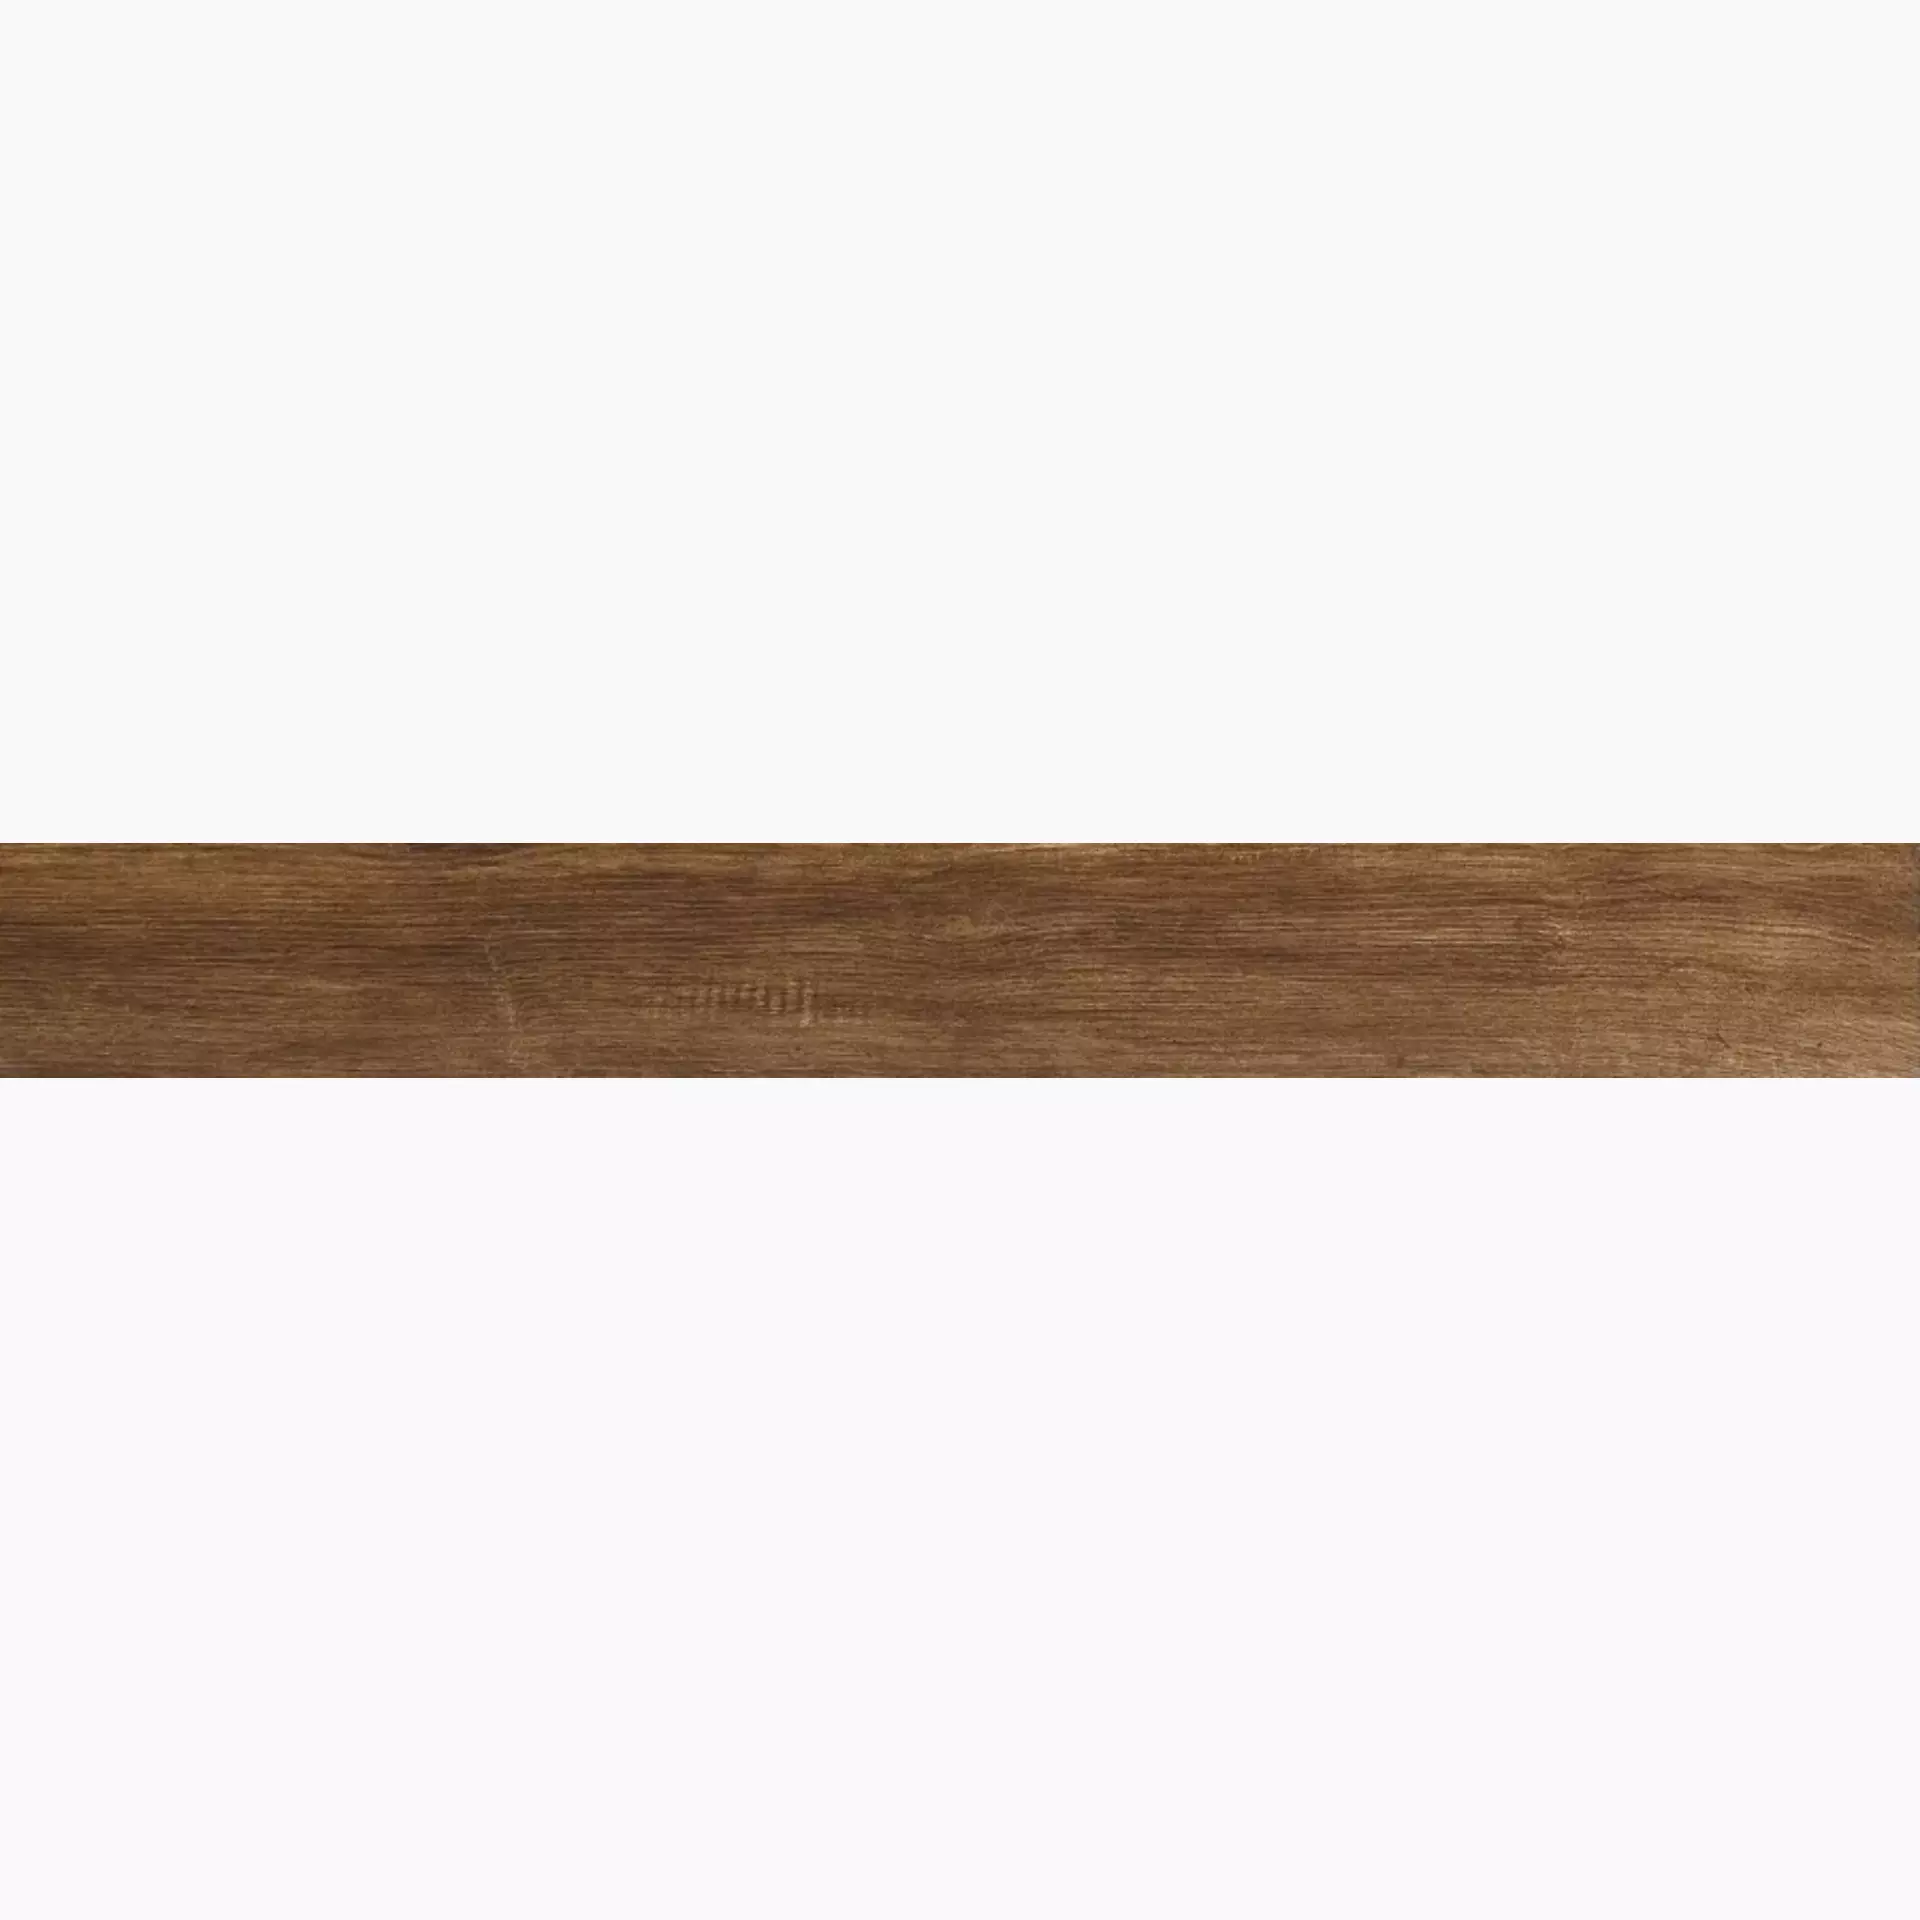 Iris E-Wood Oak Antislip 898016 11x90cm 9mm